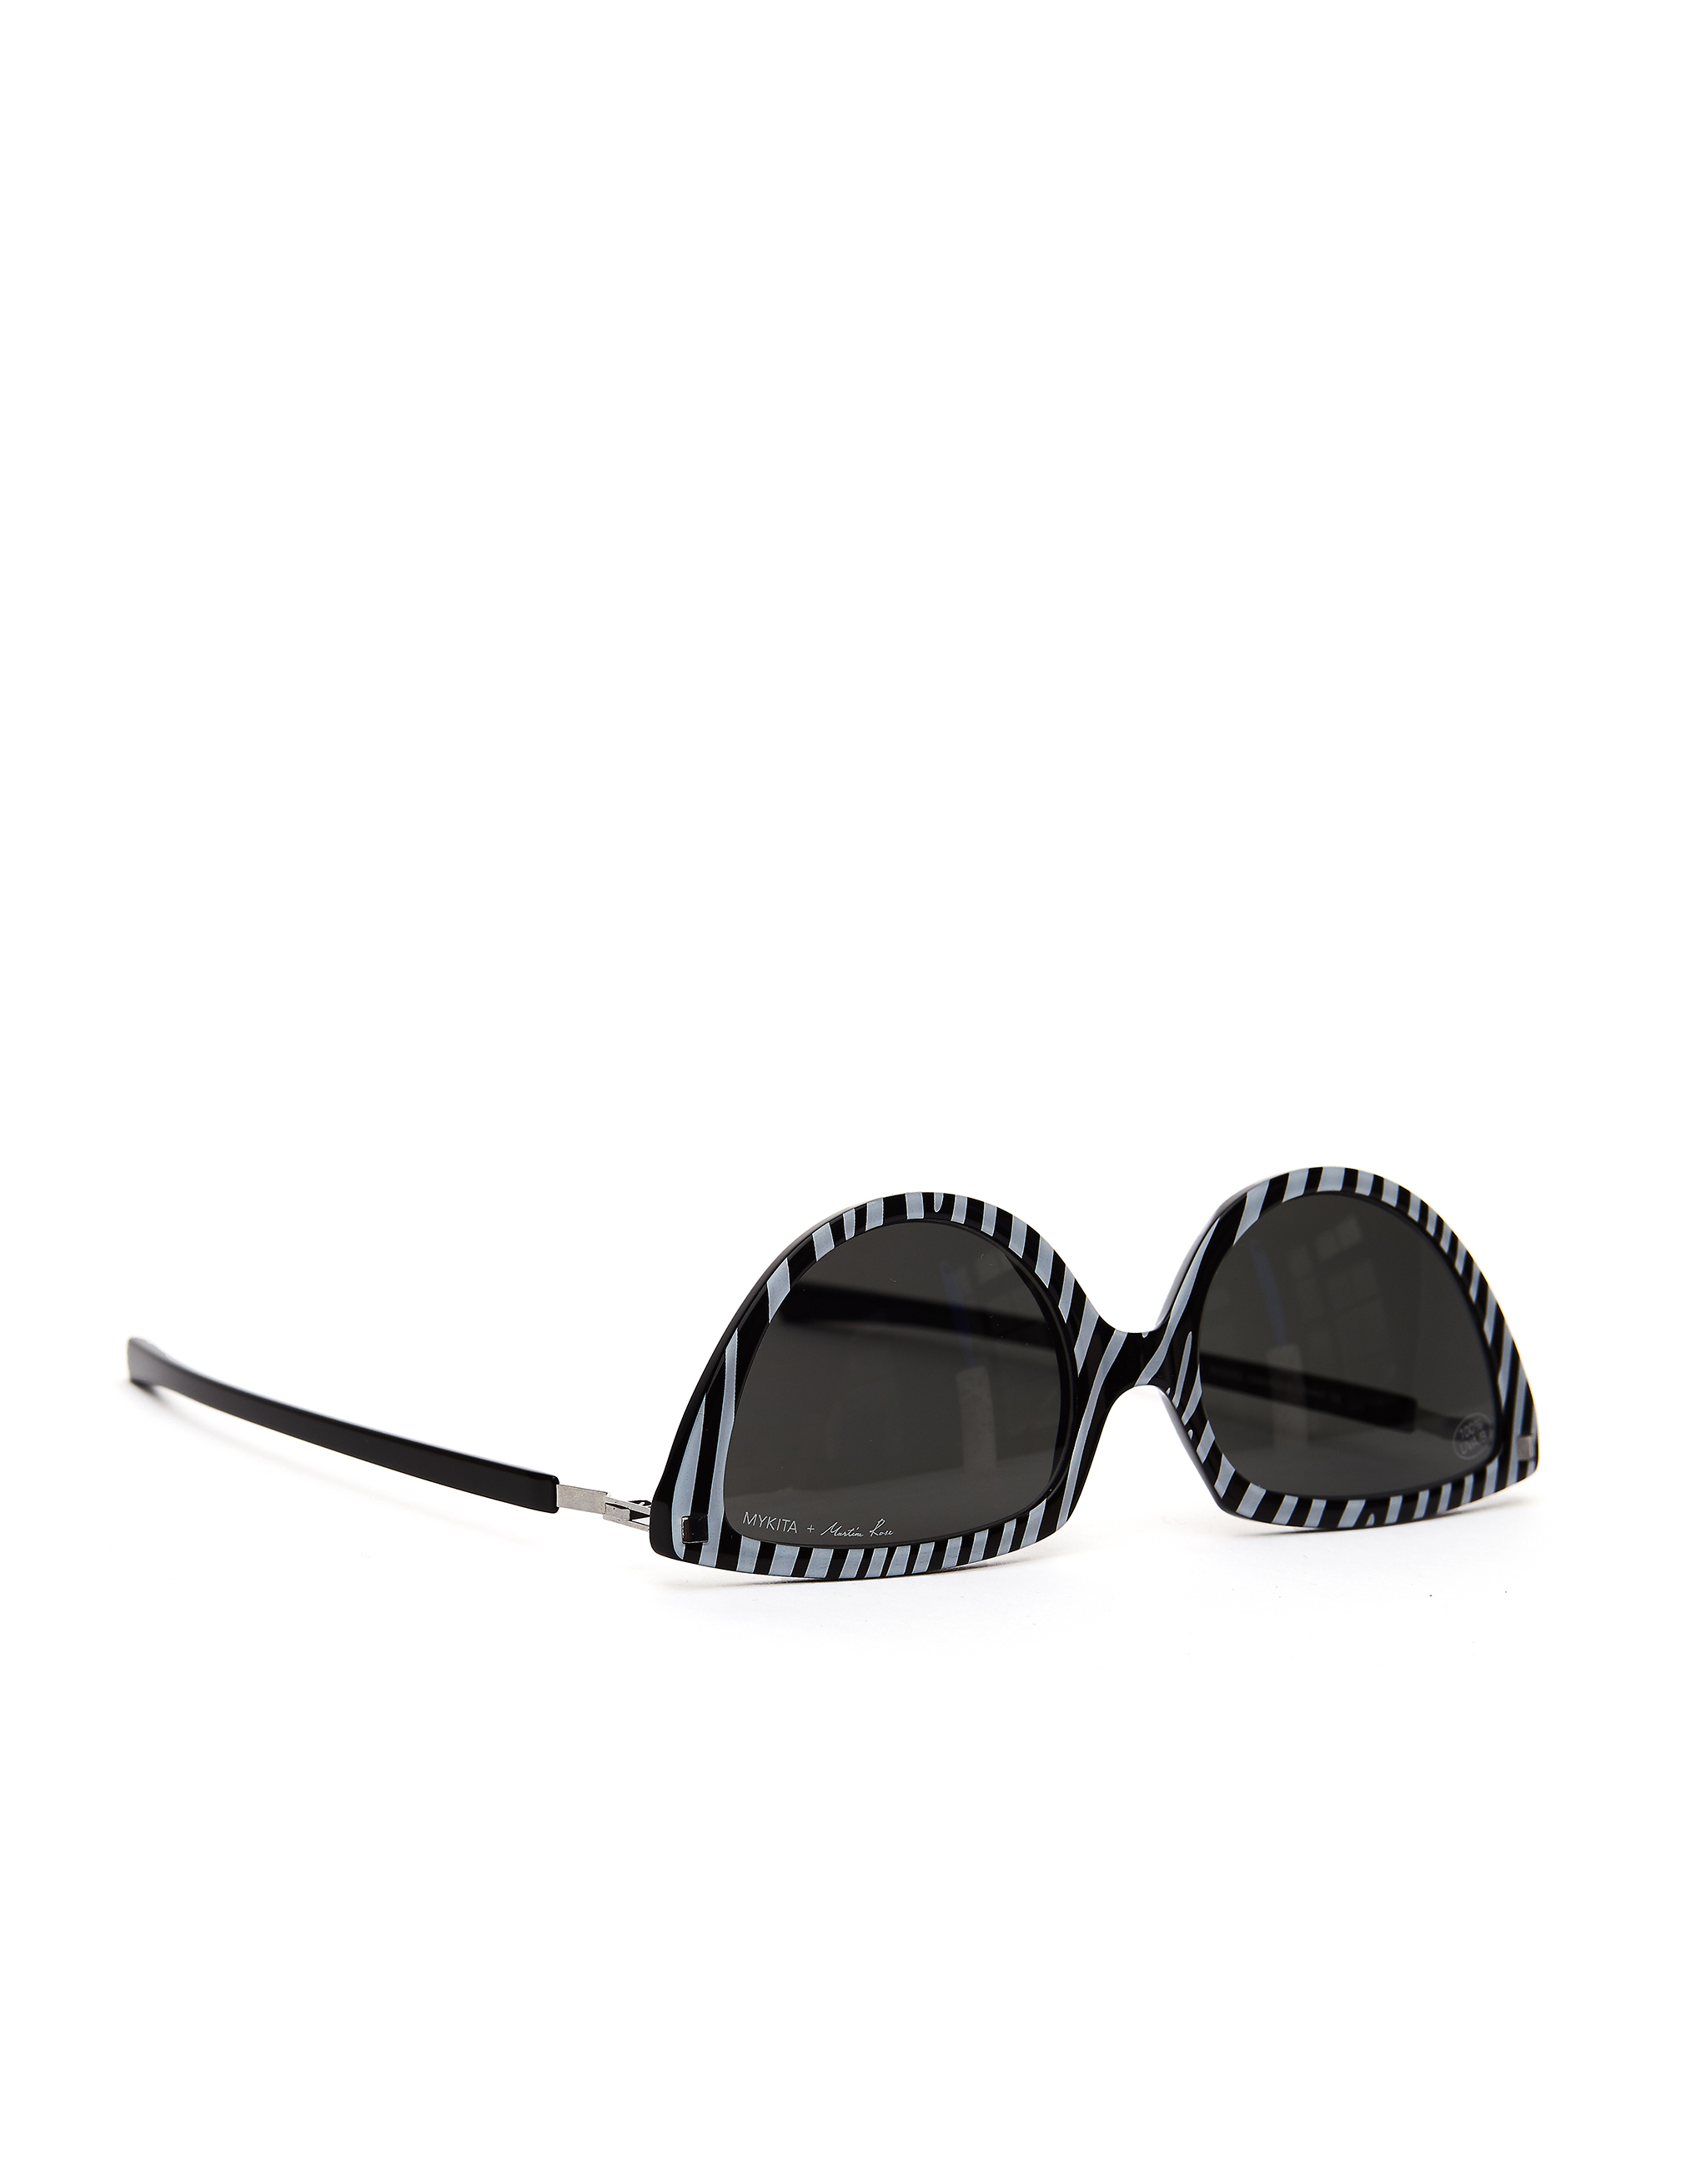 Полосатые очки Mykita + Martine Rose SOS Mykita 2503656/ZebraDarkgrey, размер One Size